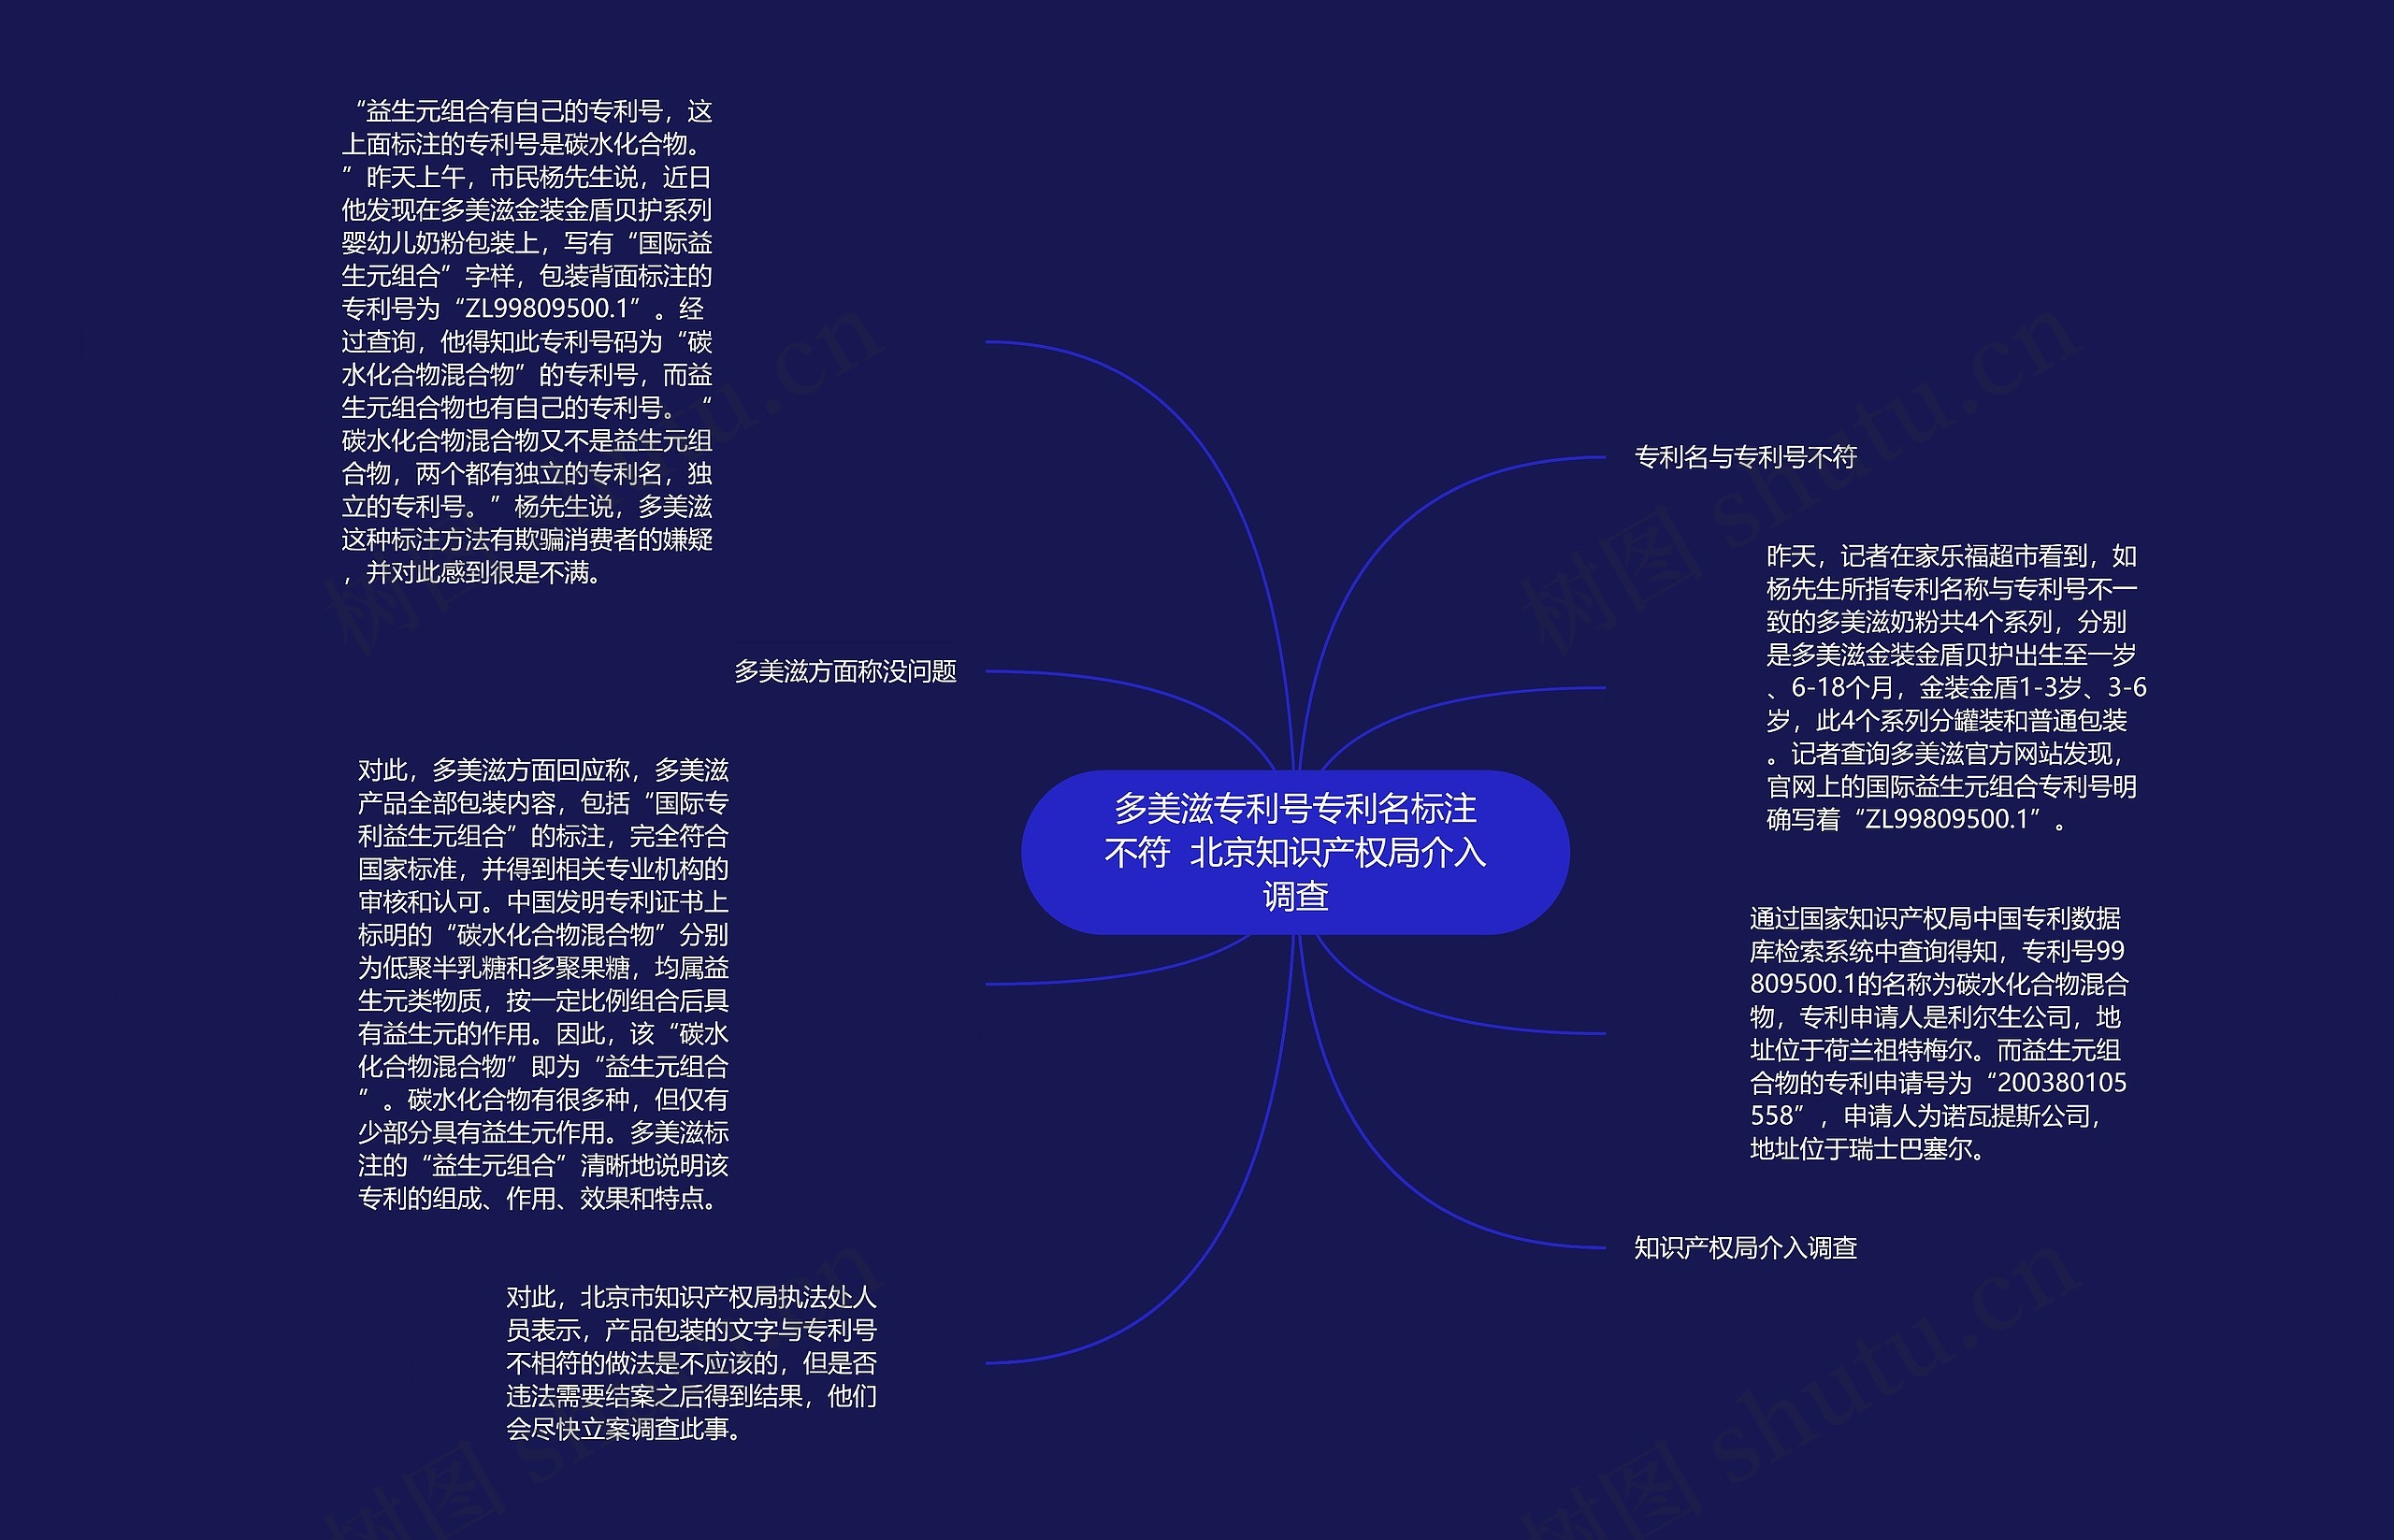 多美滋专利号专利名标注不符  北京知识产权局介入调查